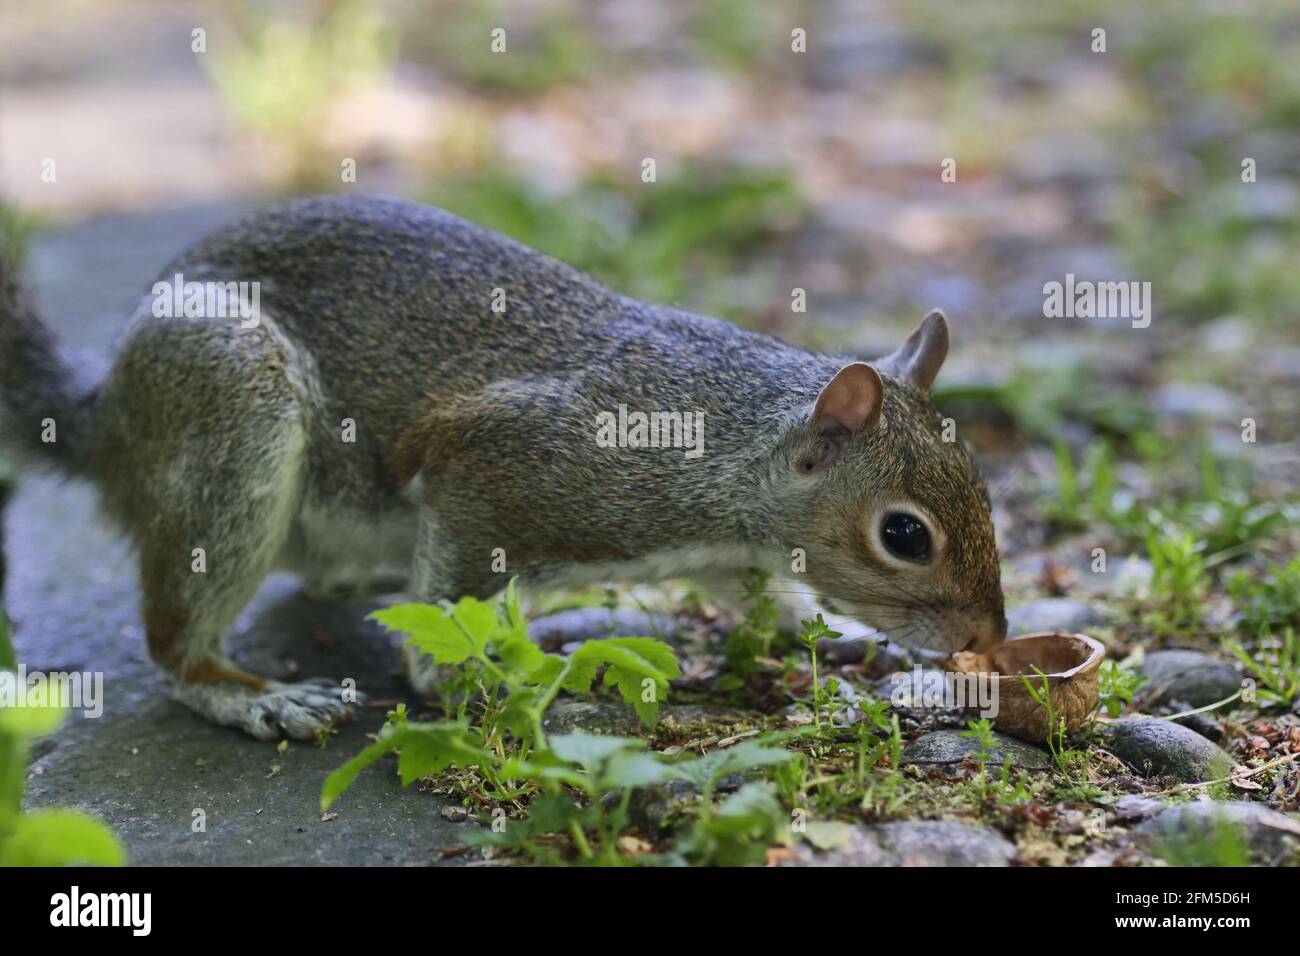 Squirrel posing in Villa Real pubblic park, Monza, Italy Stock Photo